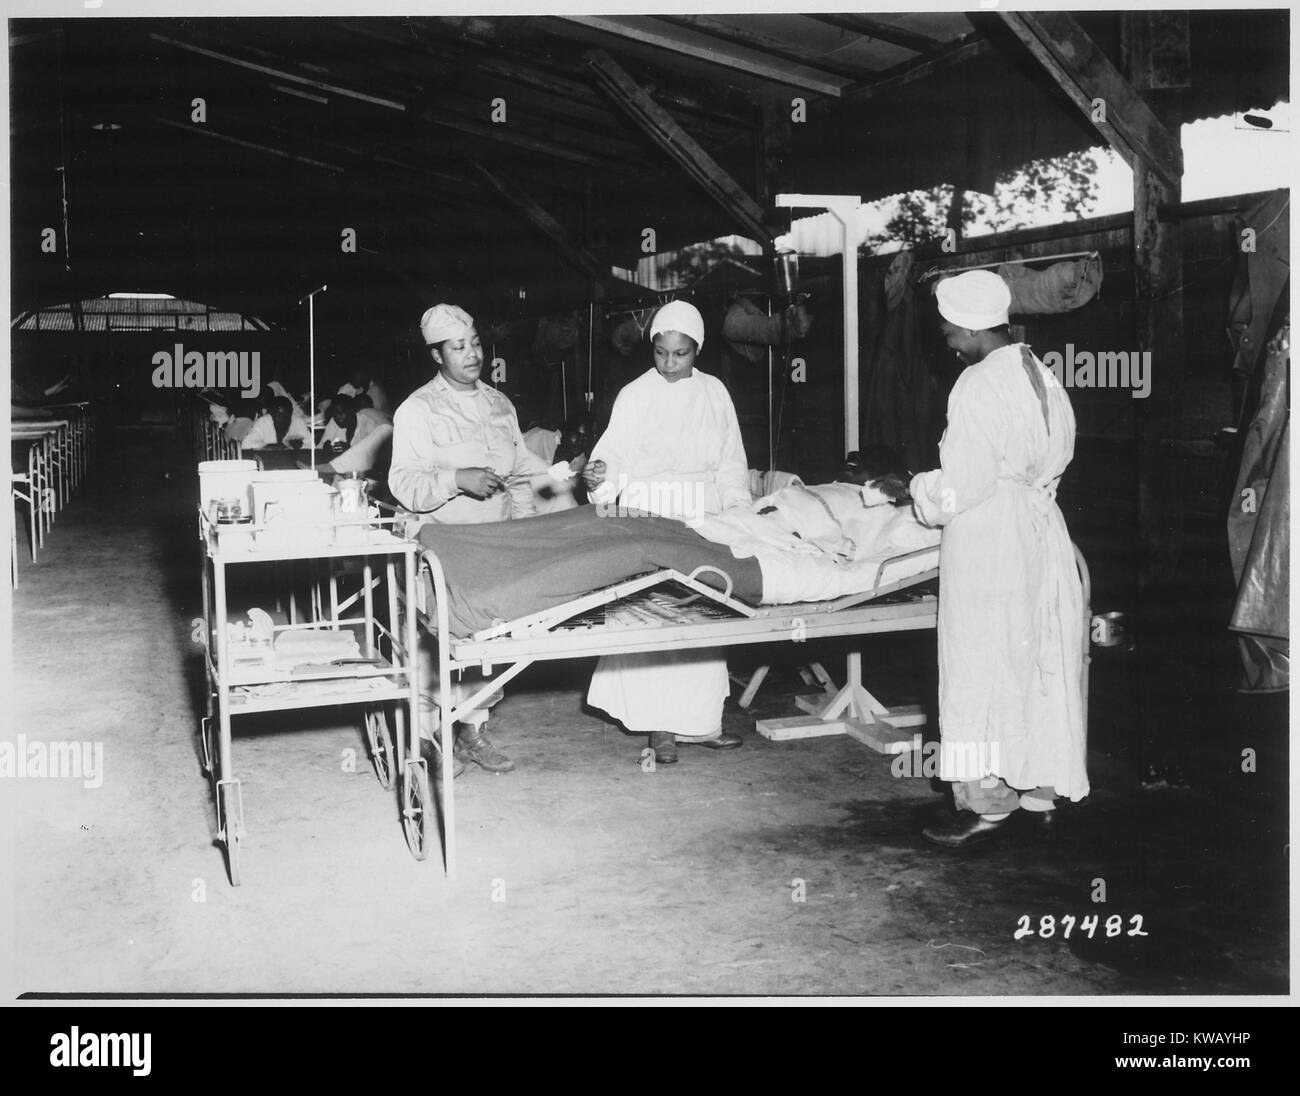 Reparto chirurgico il trattamento al 268mo ospedale di stazione di base in una Milne Bay, Nuova Guinea, 22 giugno 1944. Immagine cortesia archivi nazionali. Foto Stock